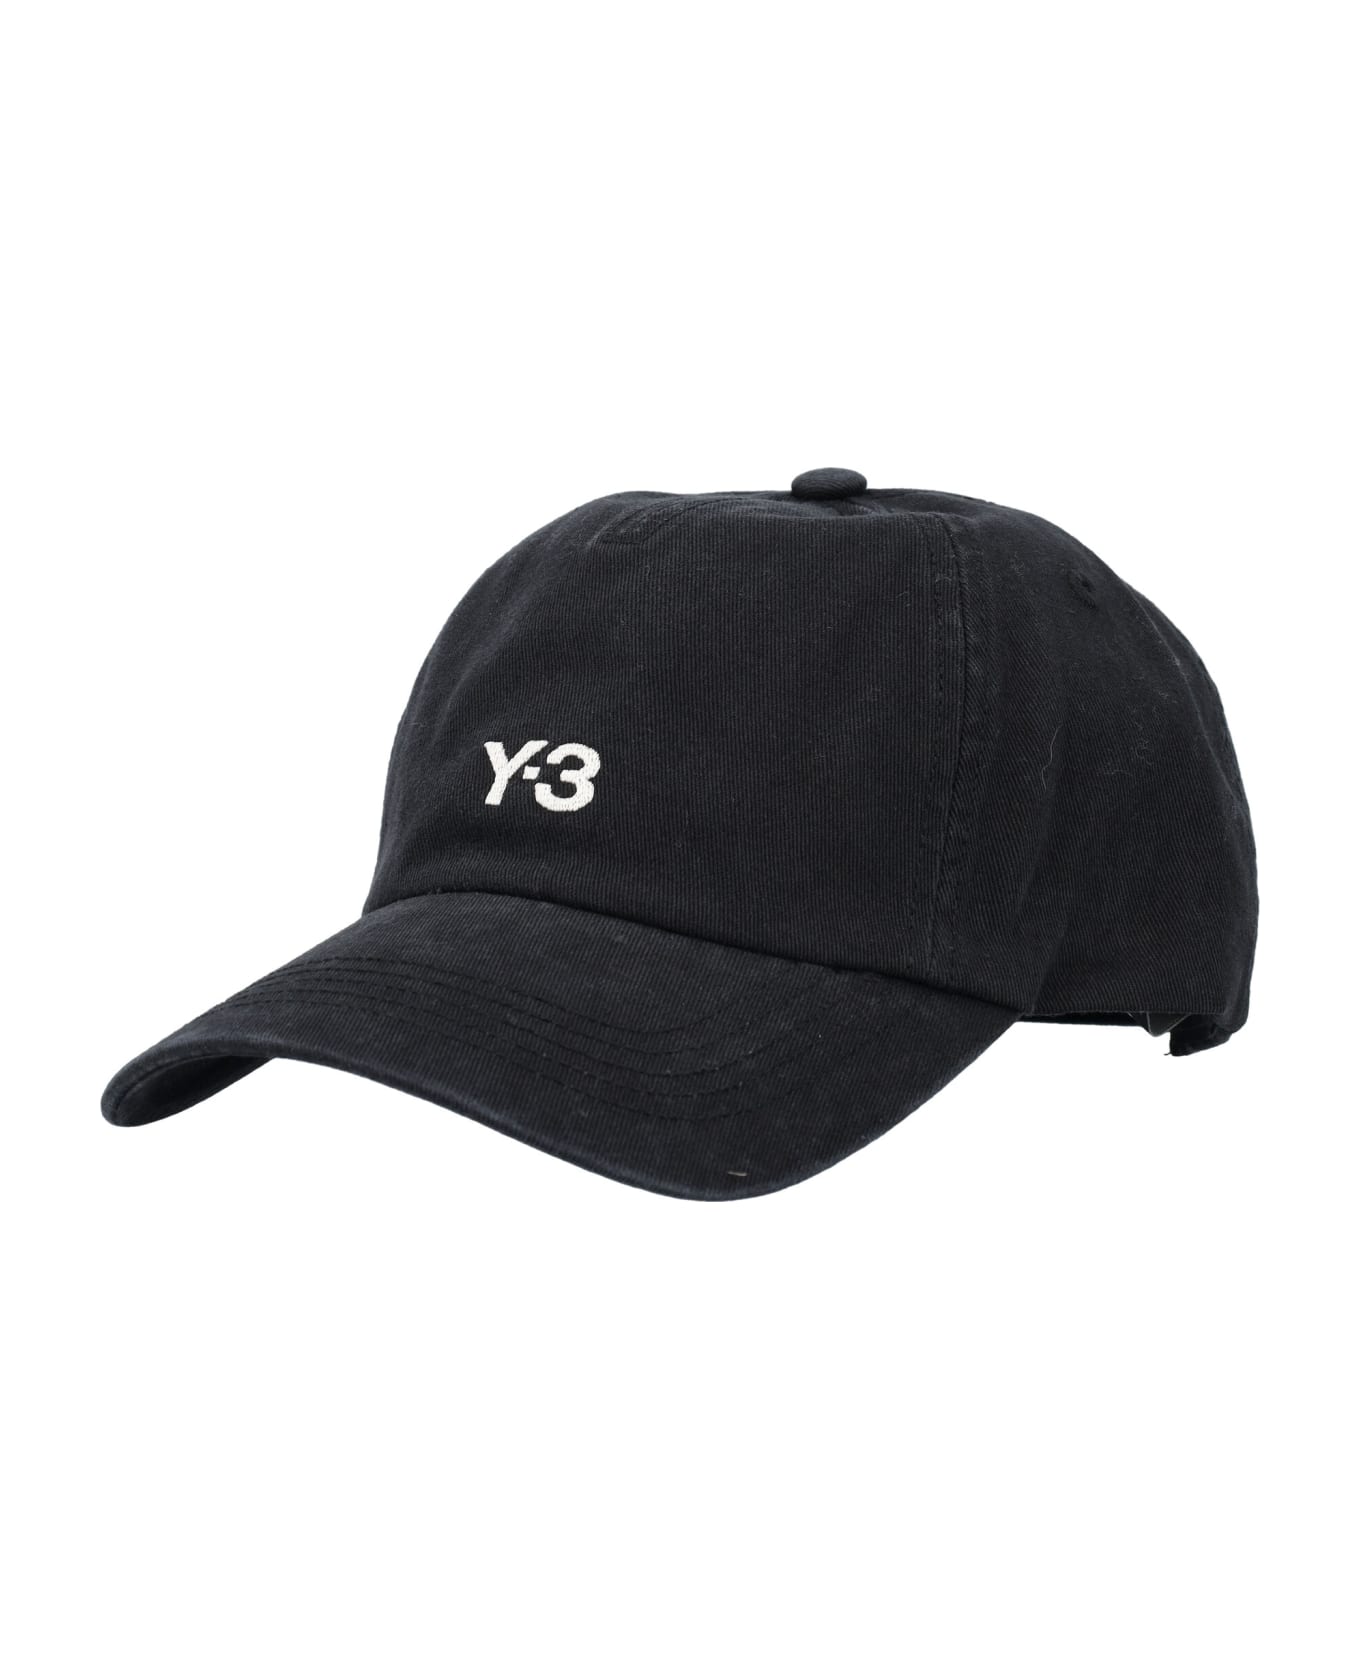 Y-3 Cap - BLACK 帽子